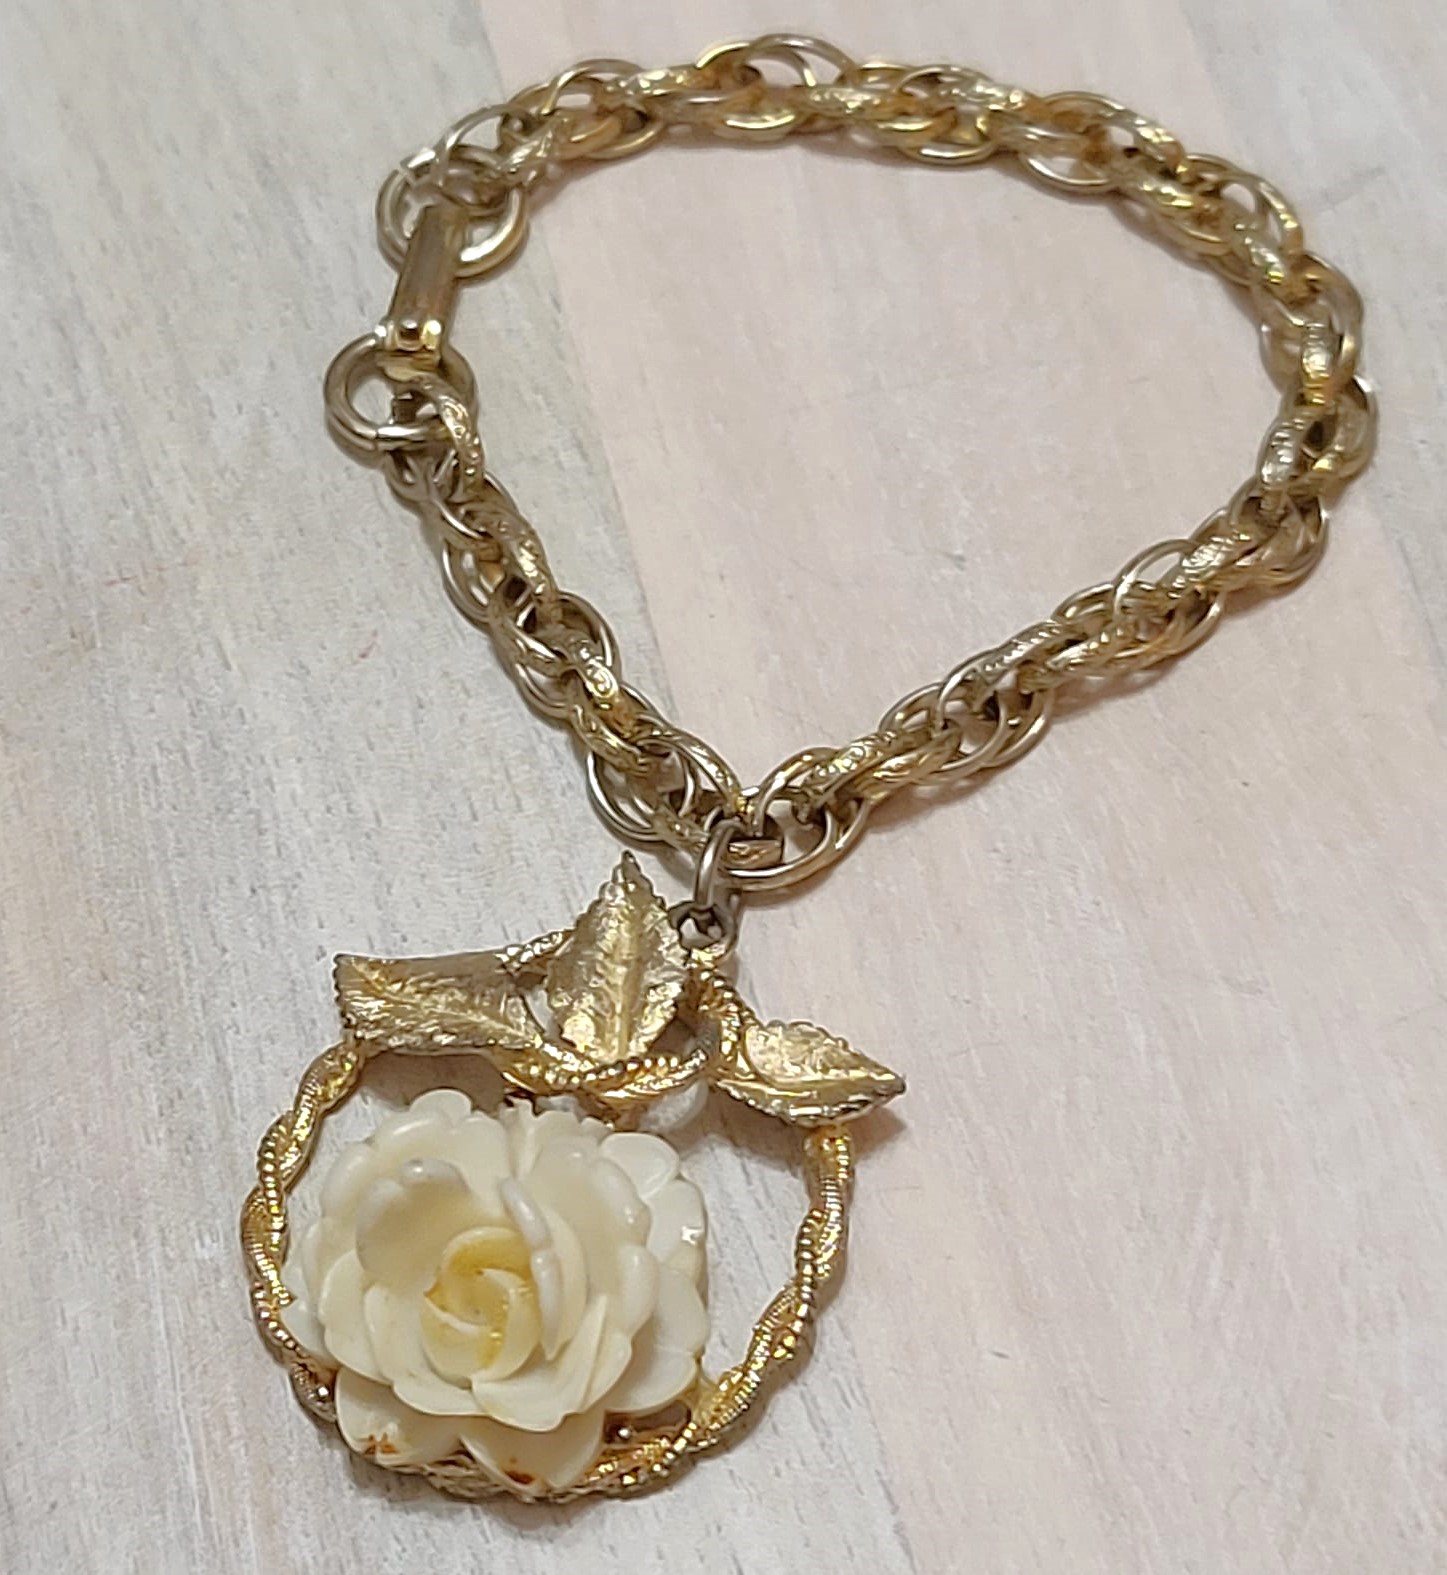 Rose charm bracelet, vintage, carved rose celluiode large charm on goldtone chain